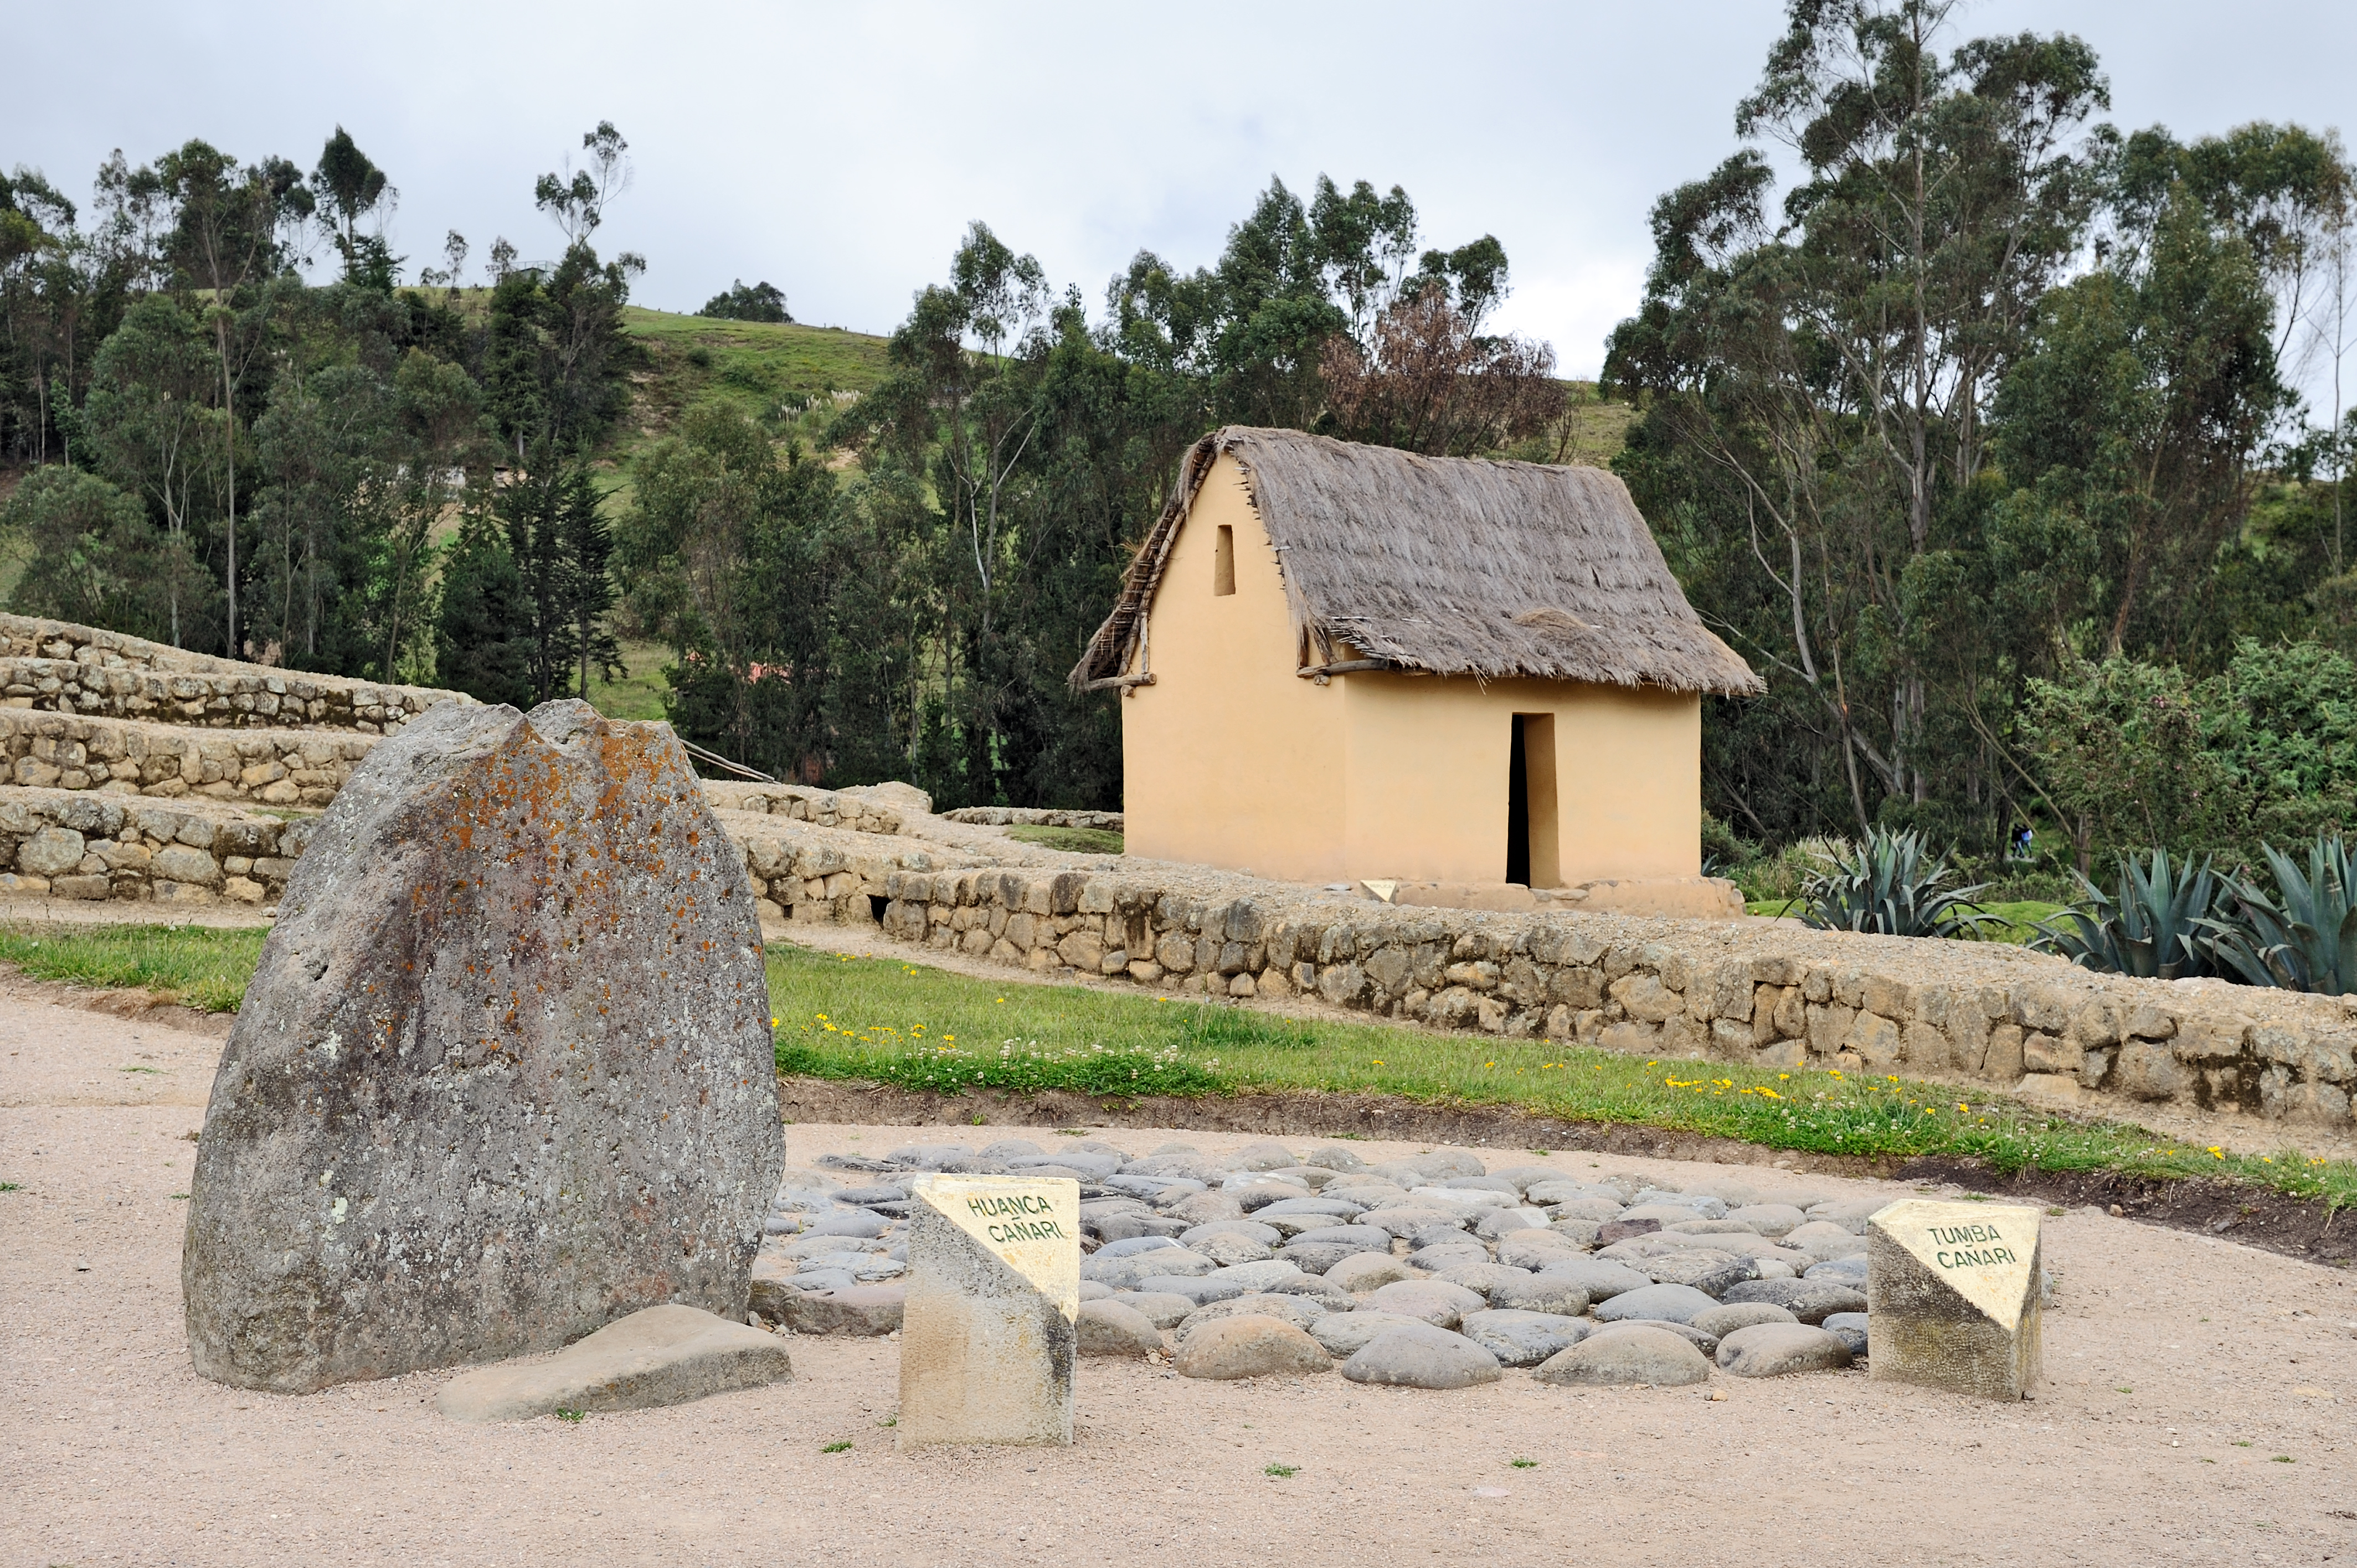 Stone left. Норте-Чико древняя цивилизация. Жилища Южной Америки. Ингапирка. Индейские жилища в Андах каменные.